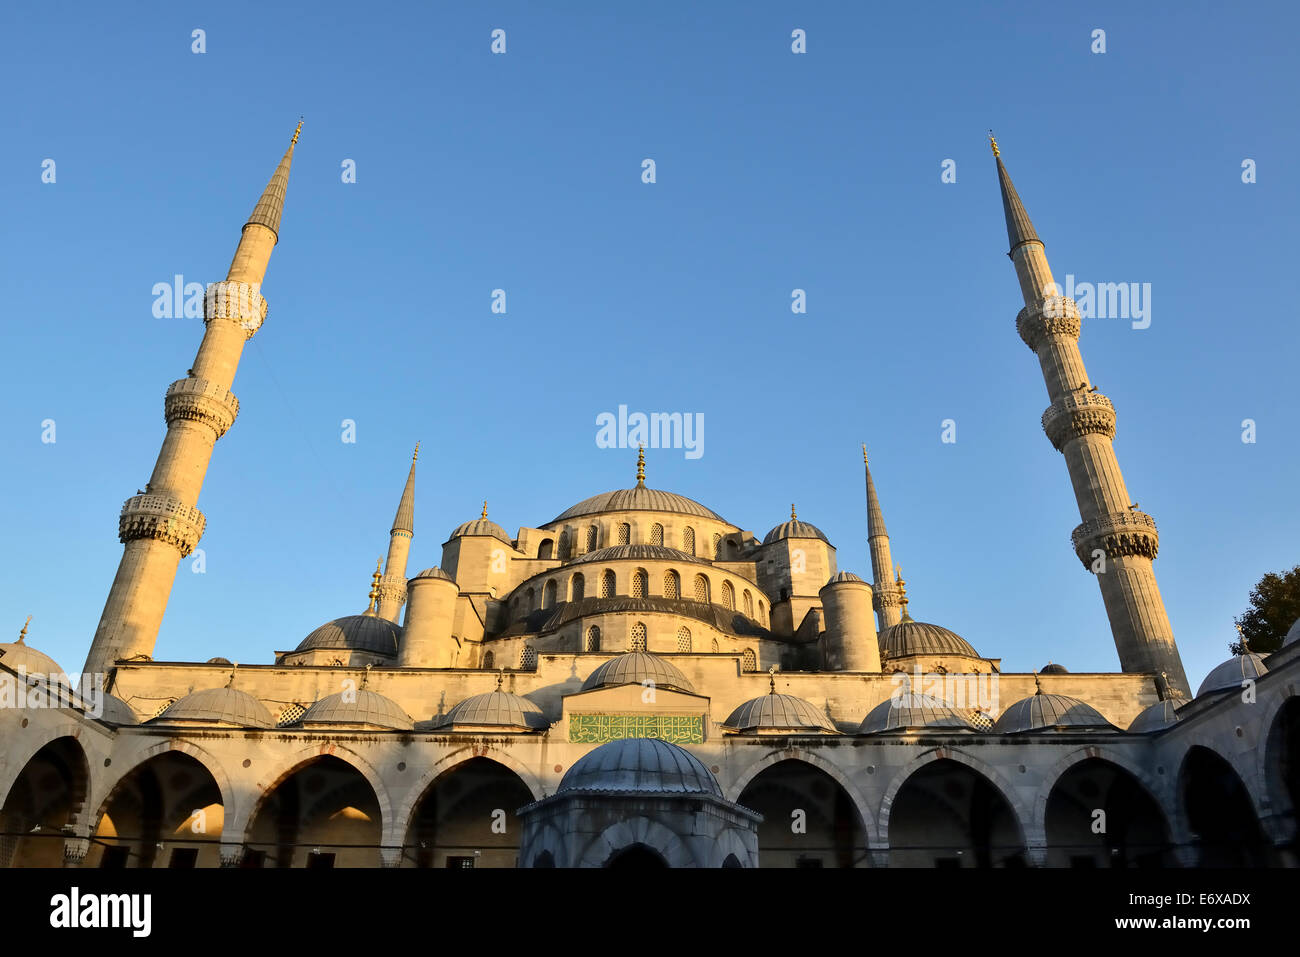 La mosquée bleue, également Mosquée Sultan Ahmed Sultan Ahmet Camii, UNESCO World Heritage Site, côté européen, Istanbul, Turquie Banque D'Images